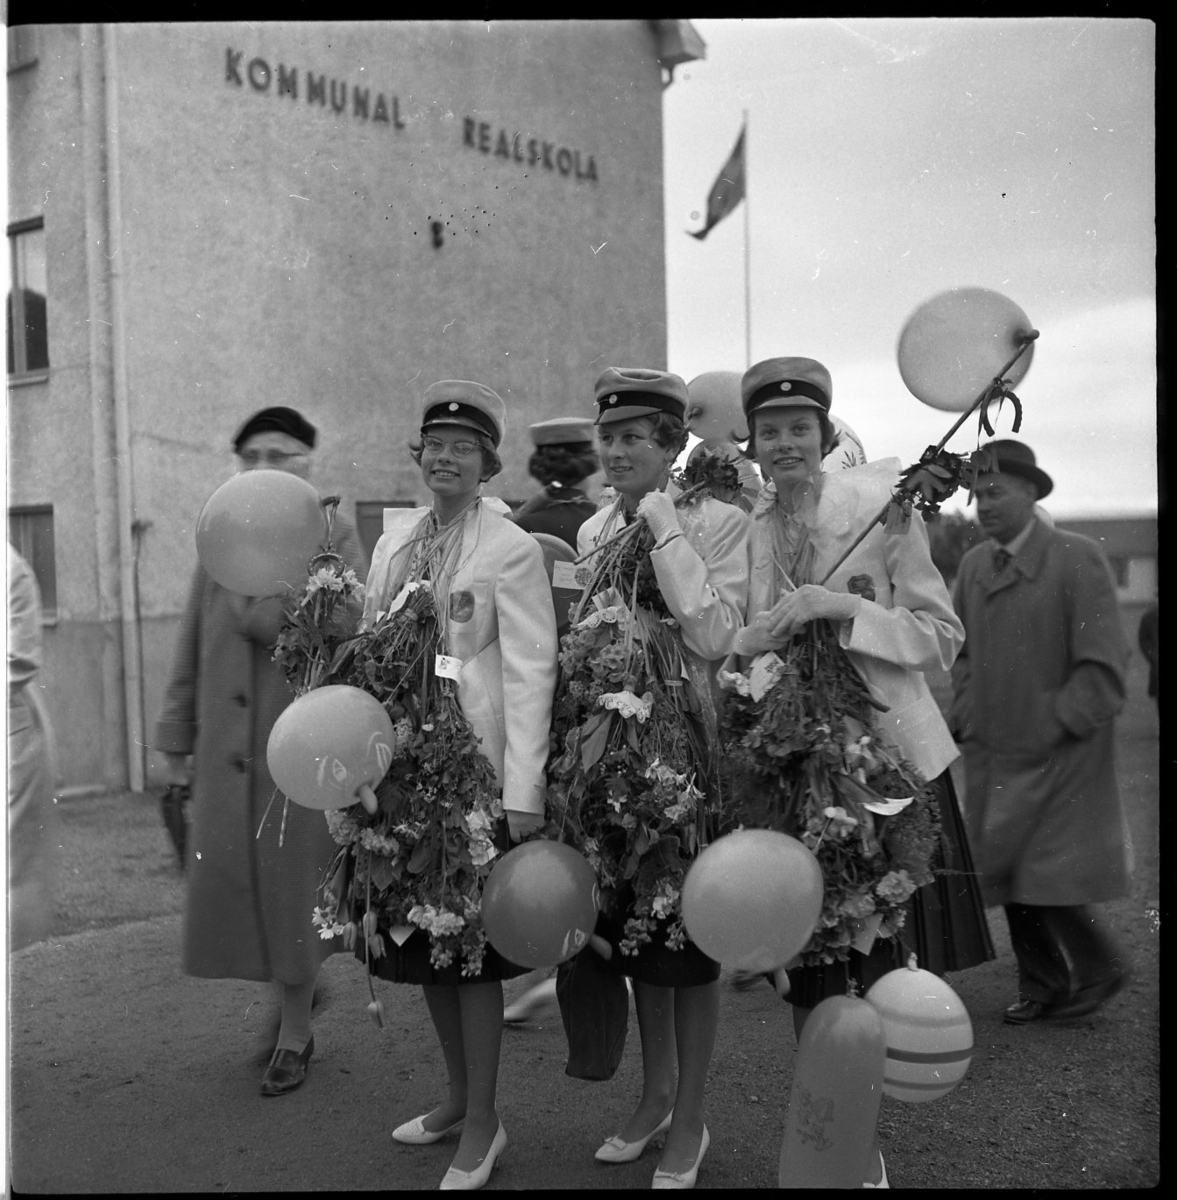 Tre kvinnliga realister står uppställda för fotografering. De bär realskolemössor och de har buketter och ballonger runt halsarna. I bakgrunden syns skolbyggnaden, på fasaden står det kommunal realskola.